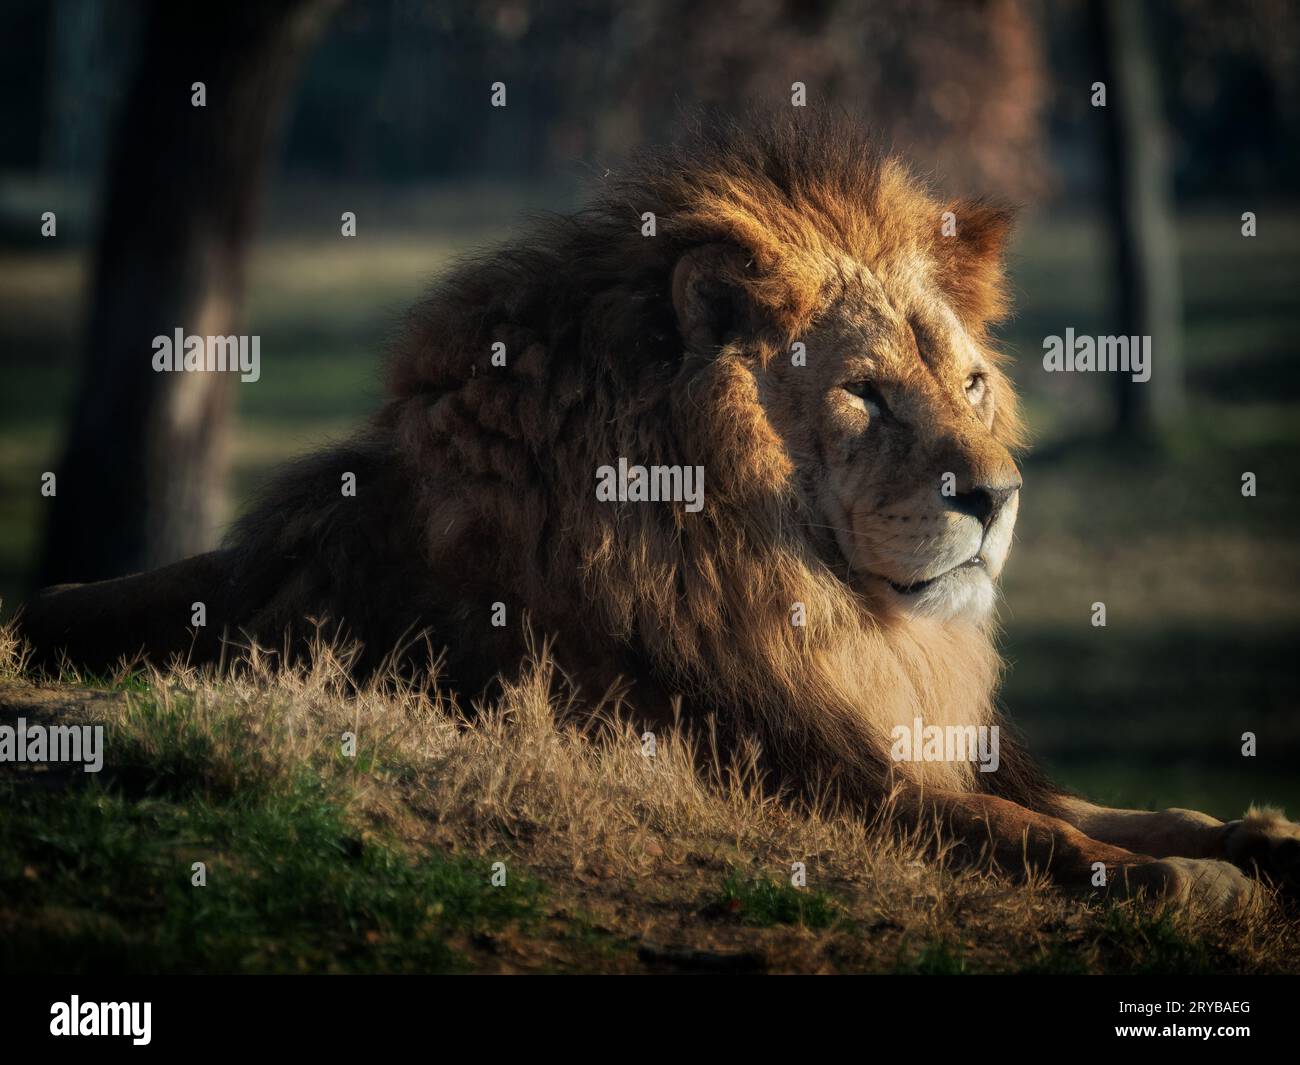 Photo d'un lion dans un environnement naturel Banque D'Images